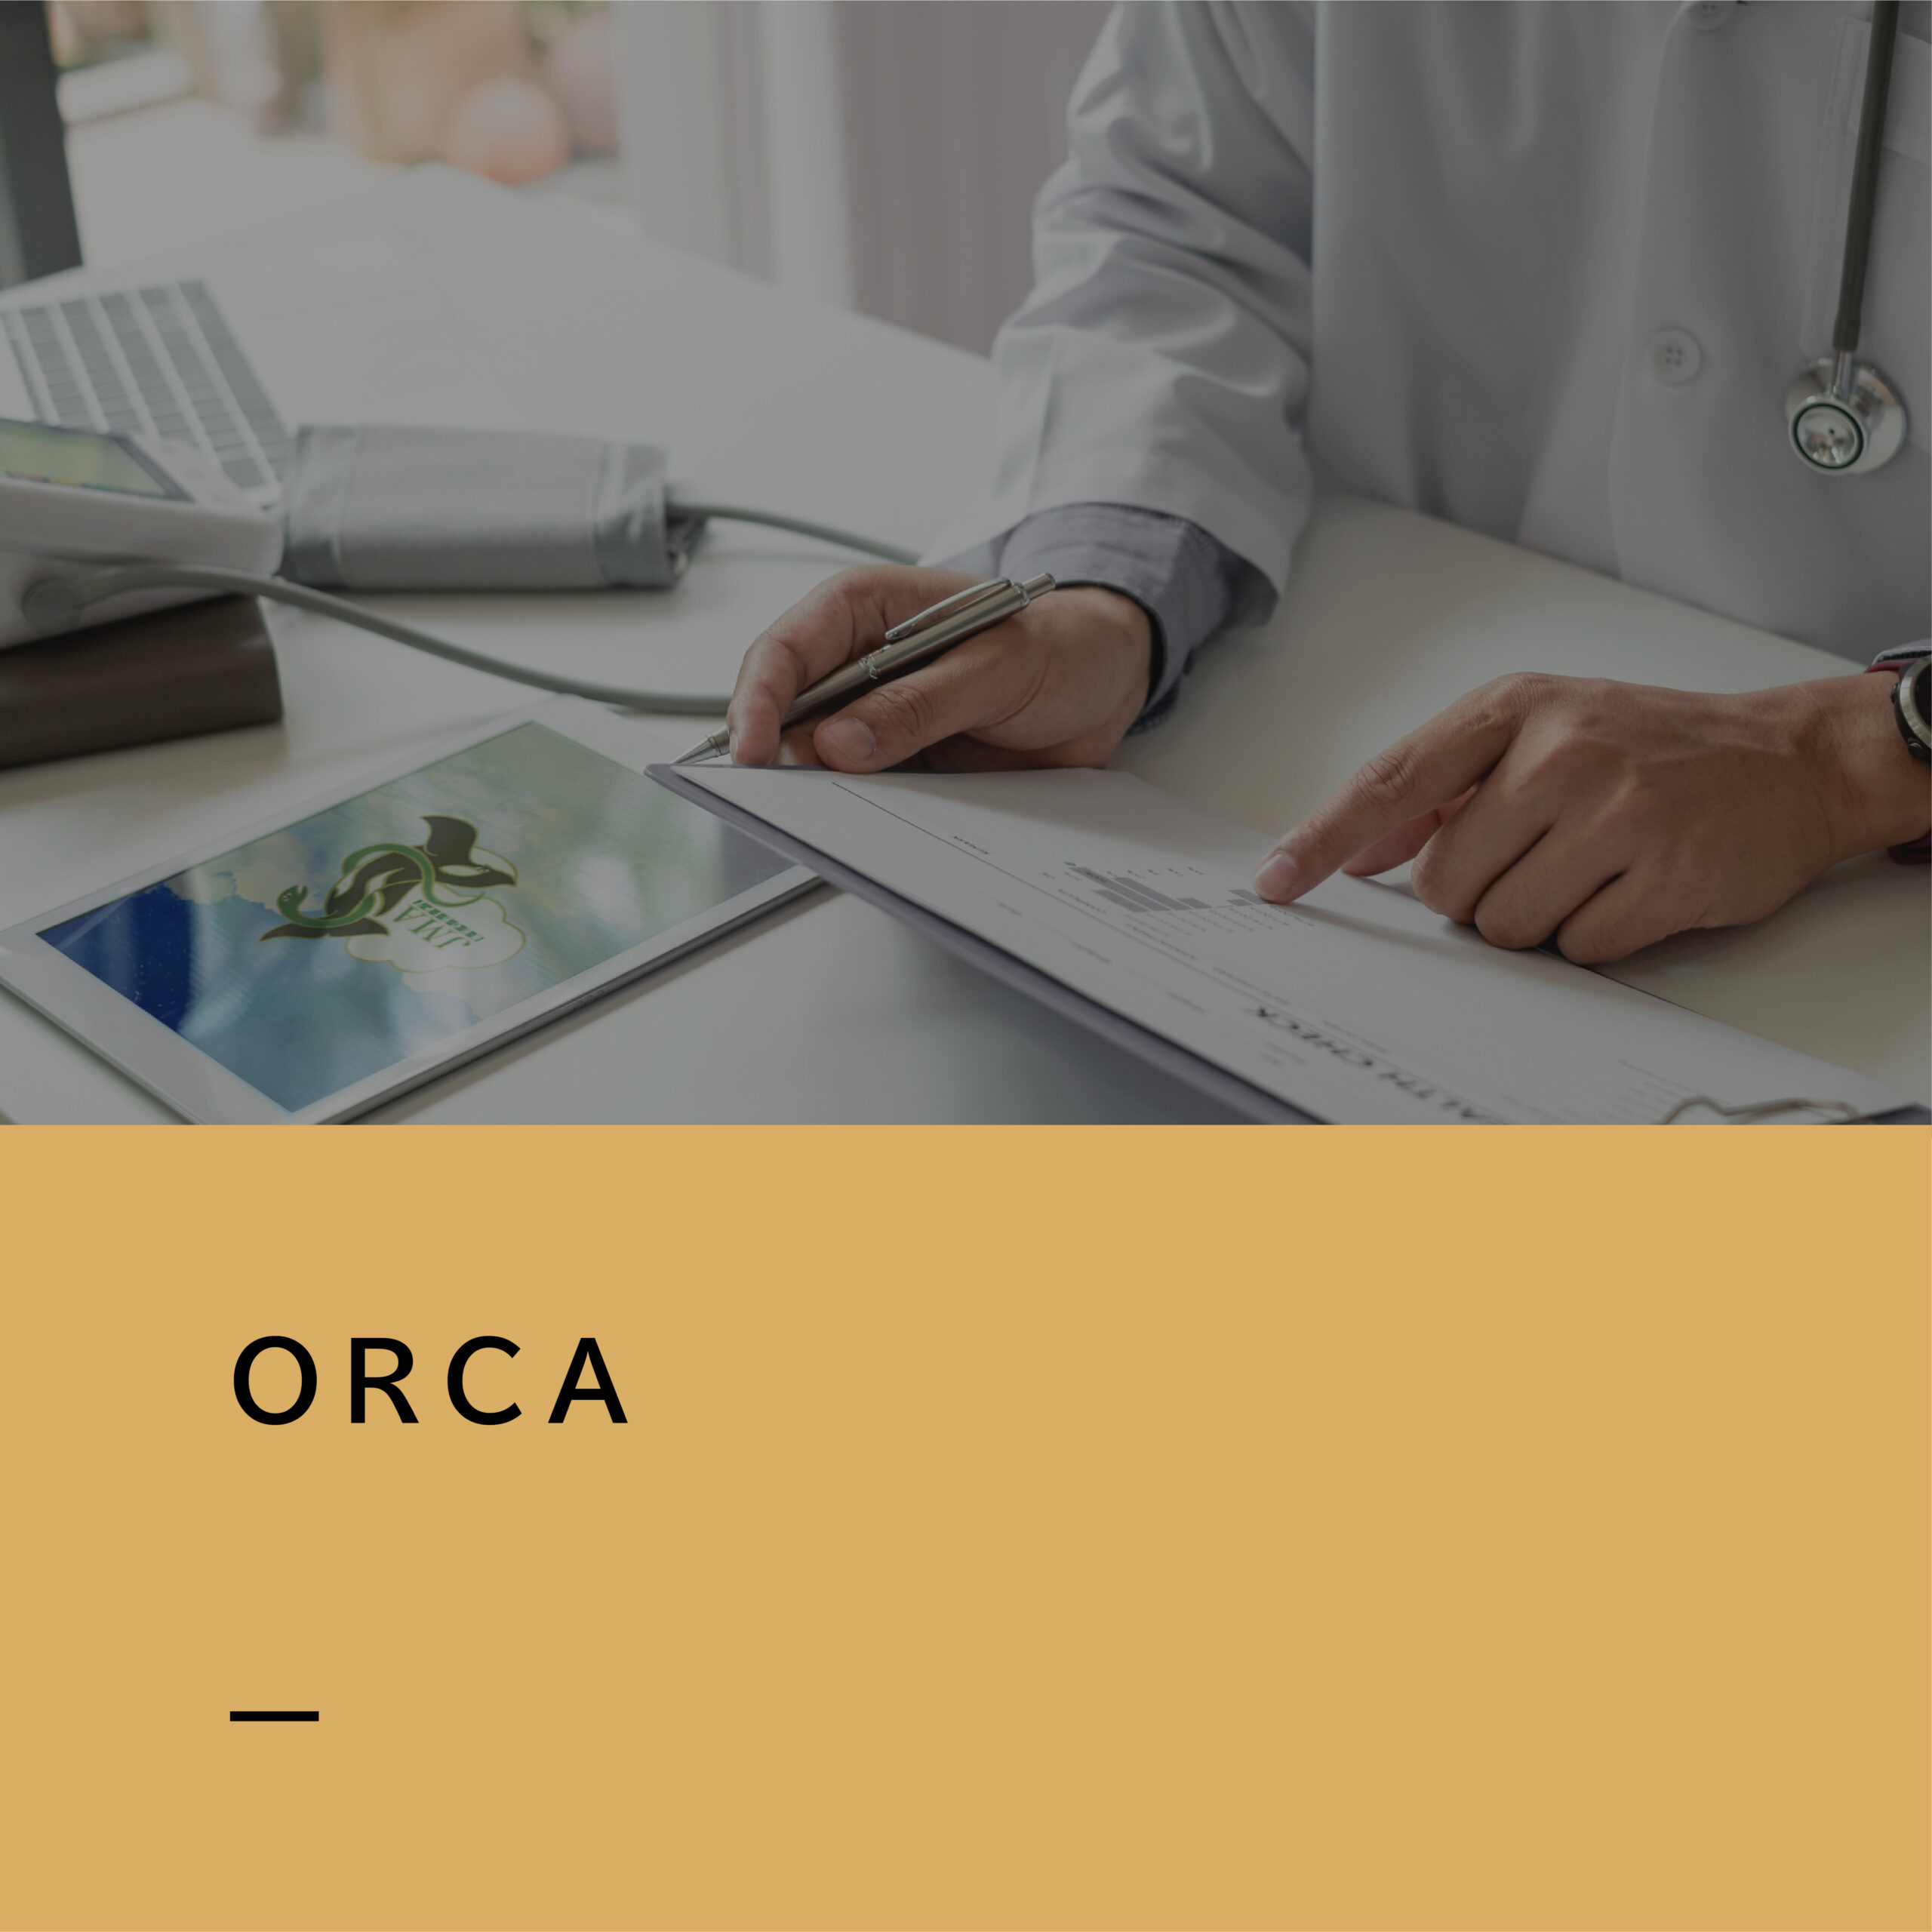 【商品紹介】ORCA／日本医師会が提供する、医療現場の「安心」と「安全」を考えた医事会計サービス。